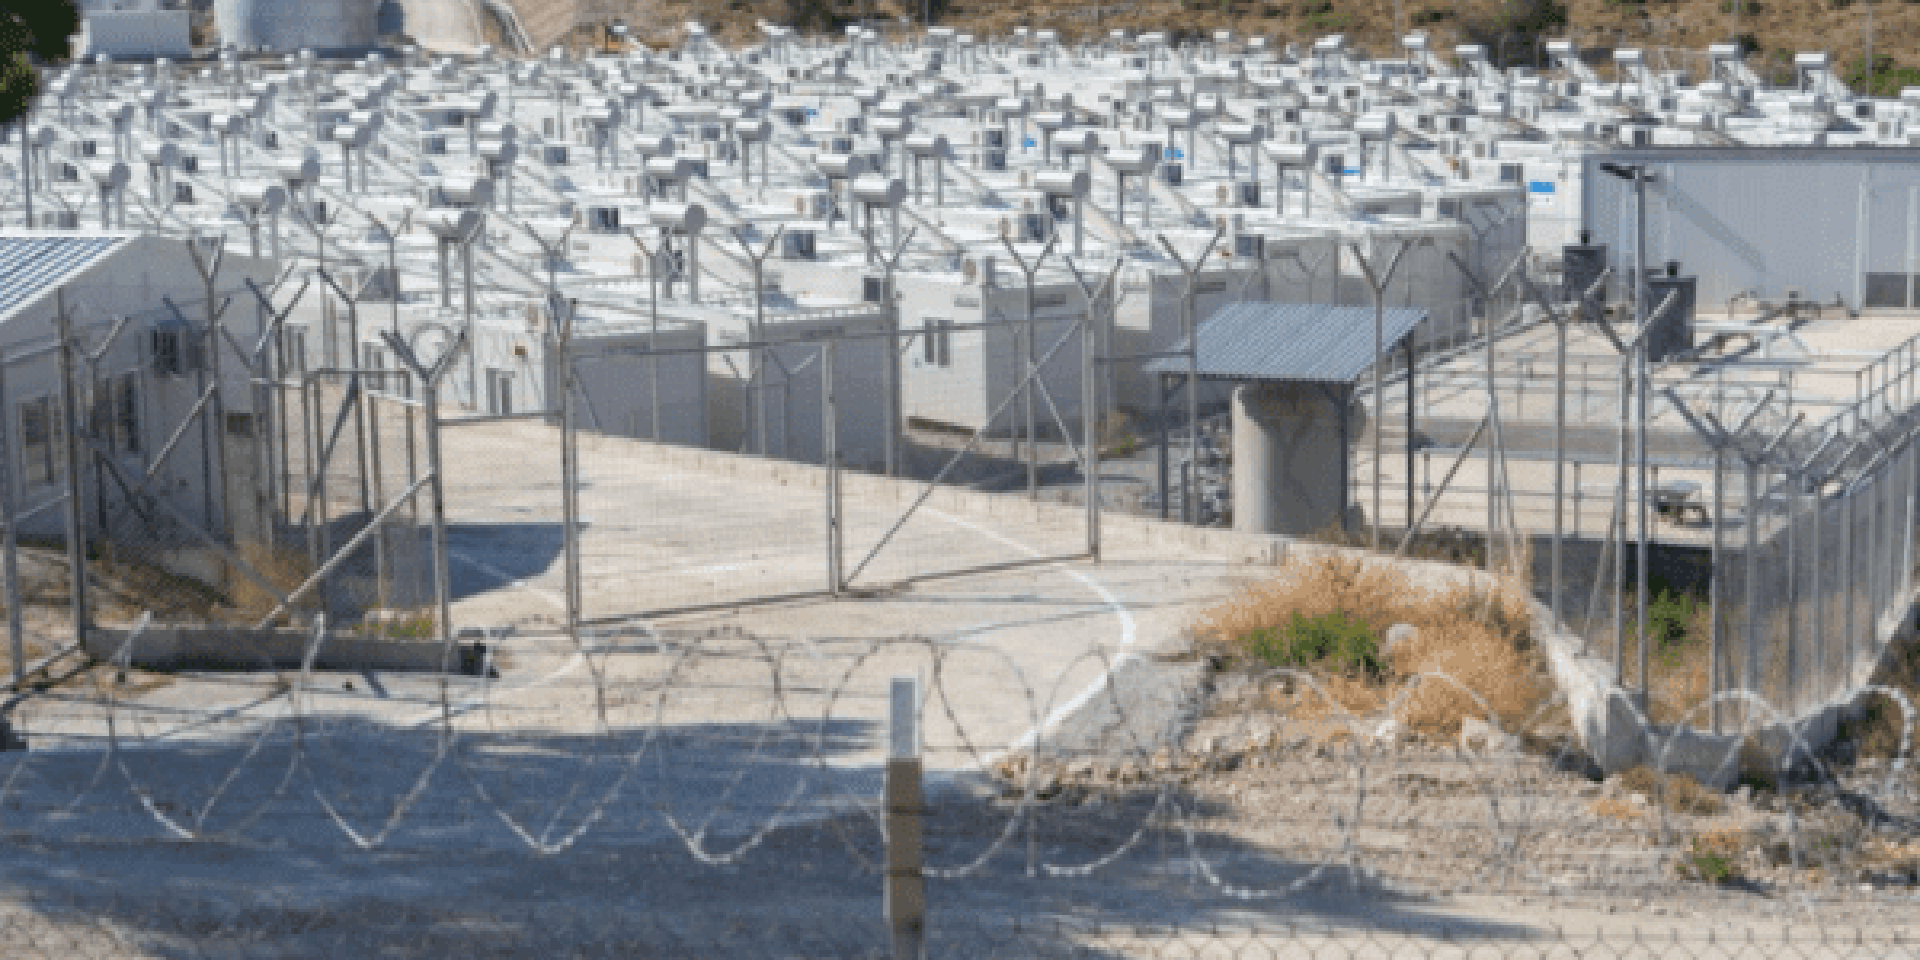 Les Filles de la Charité n'ont pas accès au nouveau camp de réfugiés construit sur l'île de Samos | © Filles de la Charité 